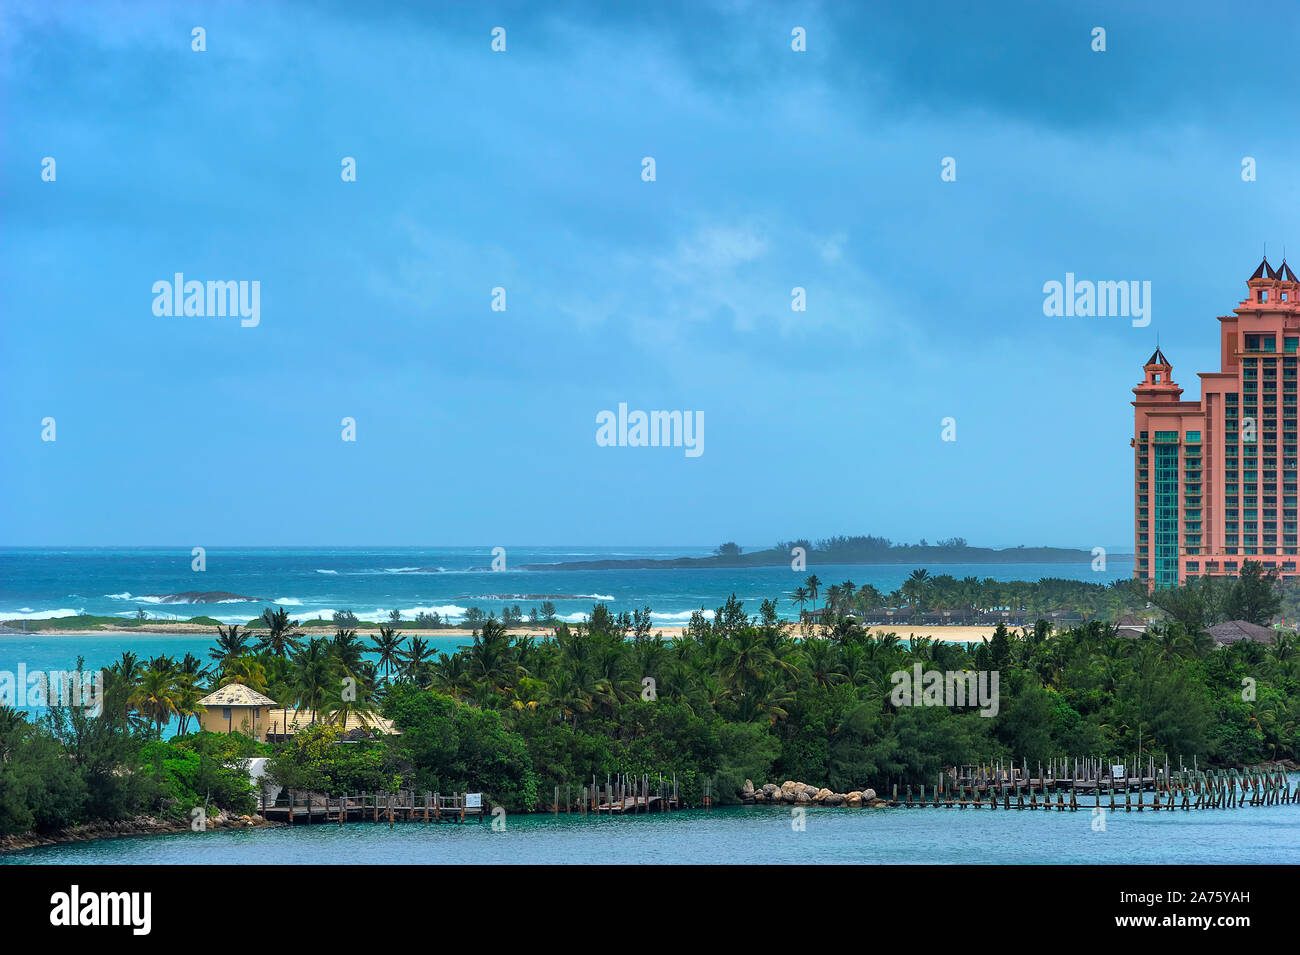 Vistas de la isla de paraíso donde Atlantis Resort puede ser visto desde un barco de crucero entrando en el puerto de Nassau bajo un clima tormentoso. Foto de stock